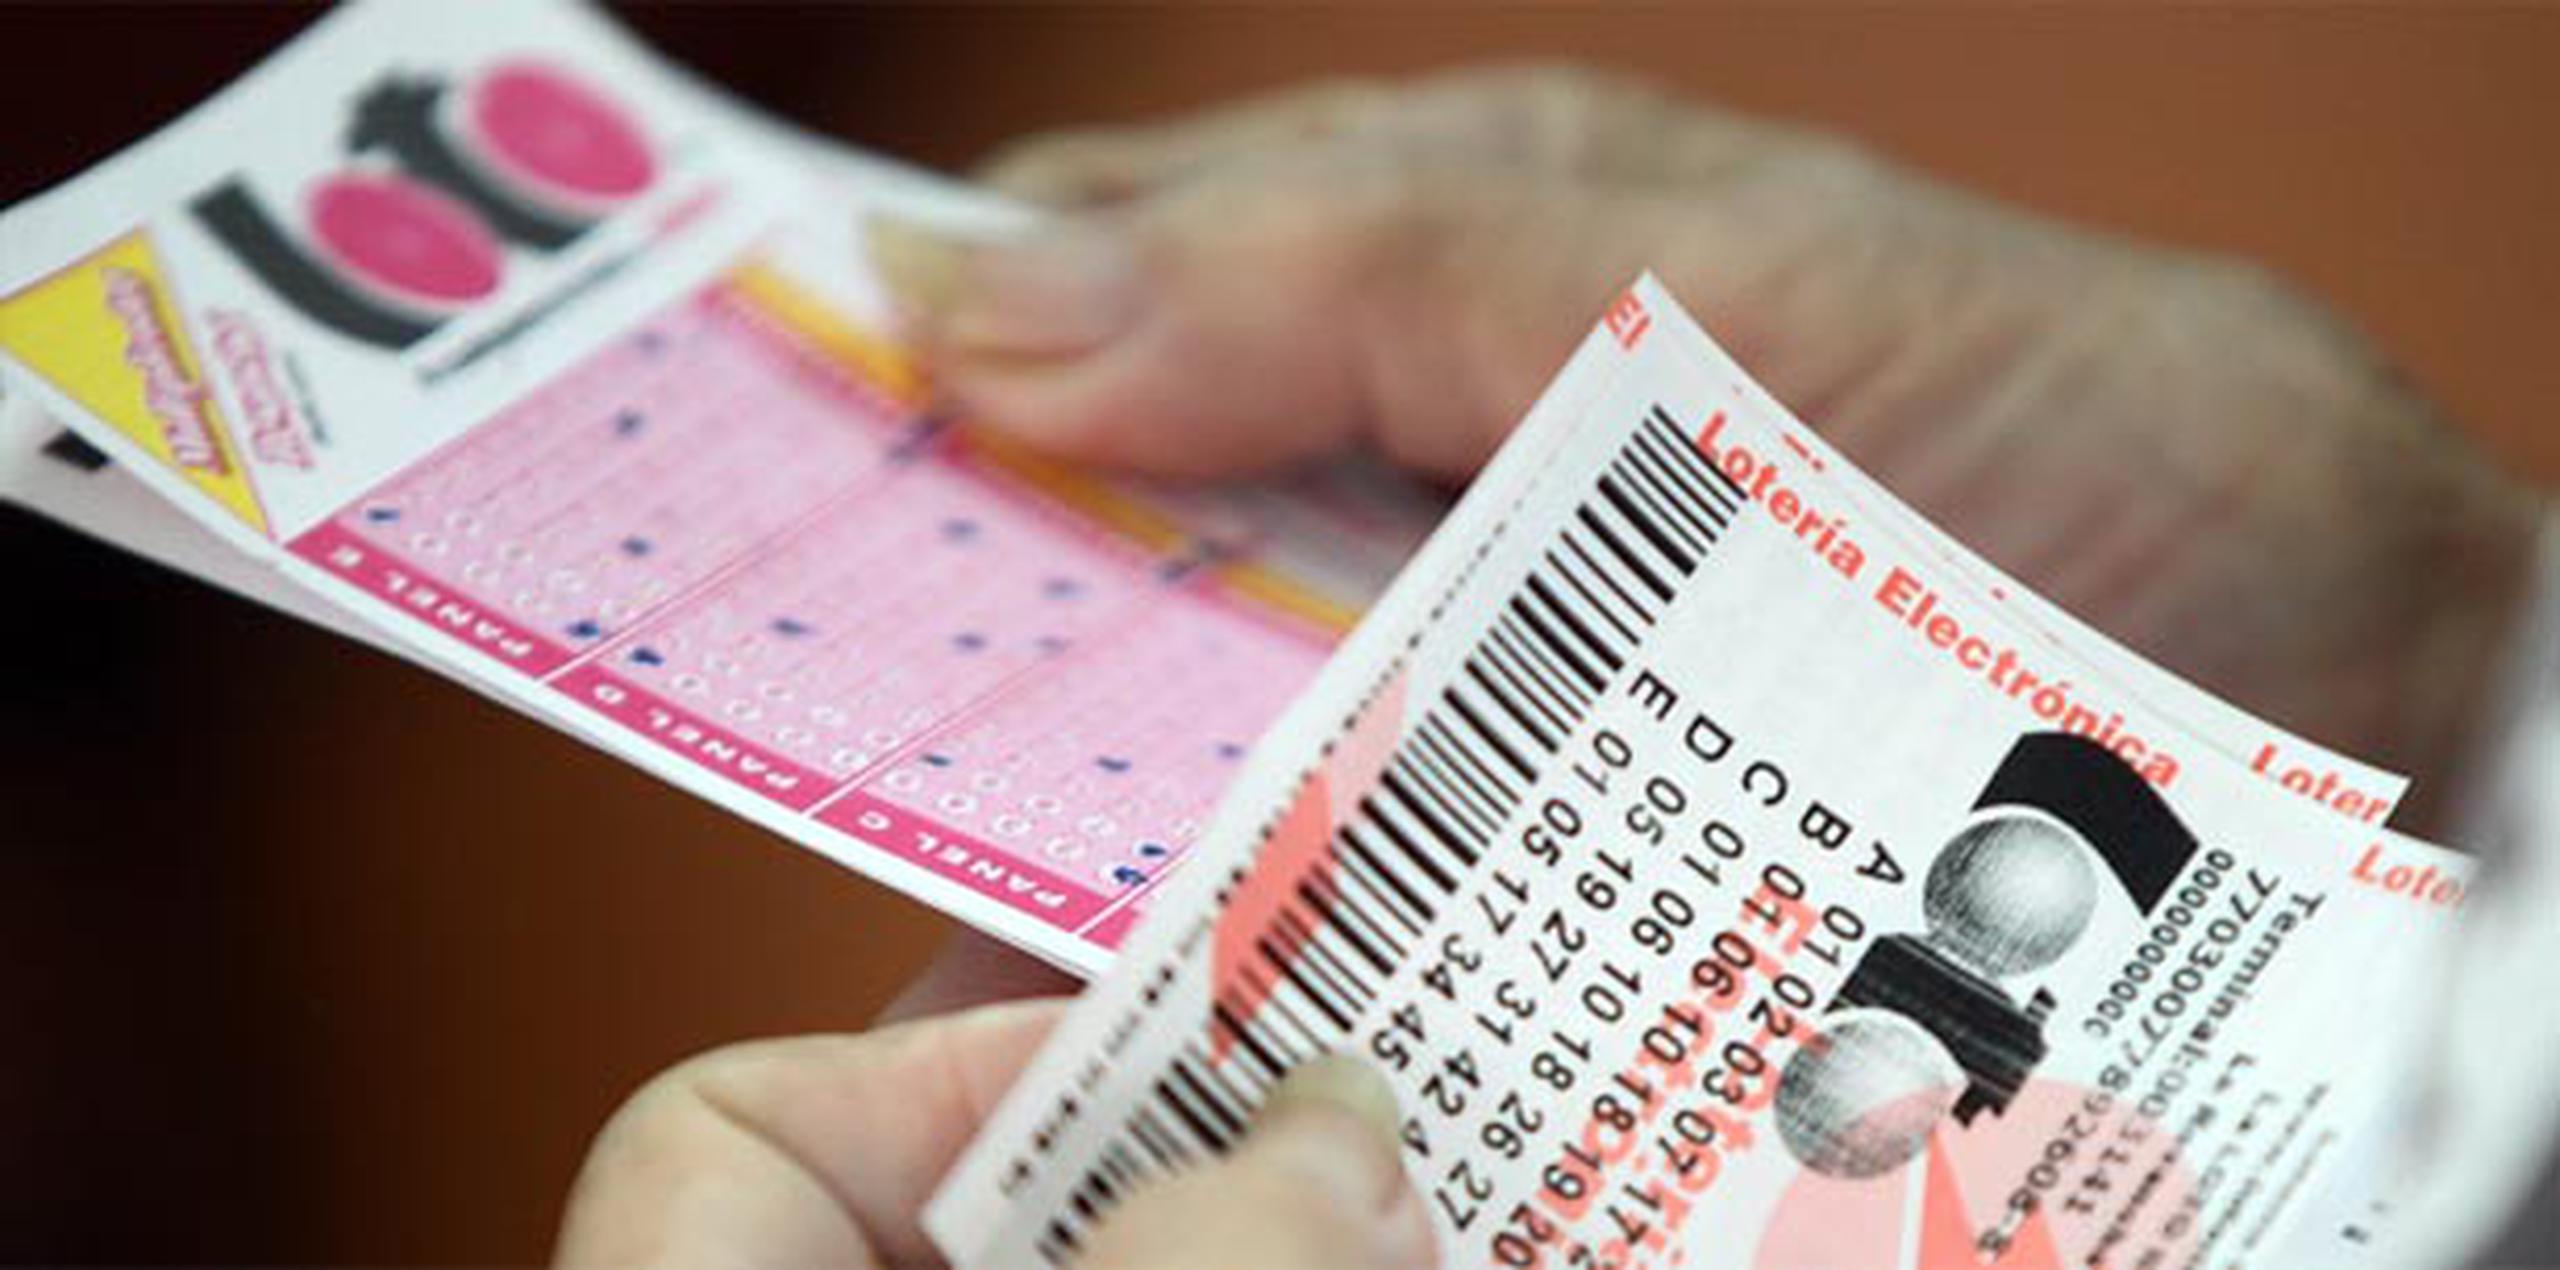 Mientras, La Revancha tendrá un “jackpot” de $5.0 millones disponibles para el próximo sorteo que se celebrará el viernes. (Archivo)